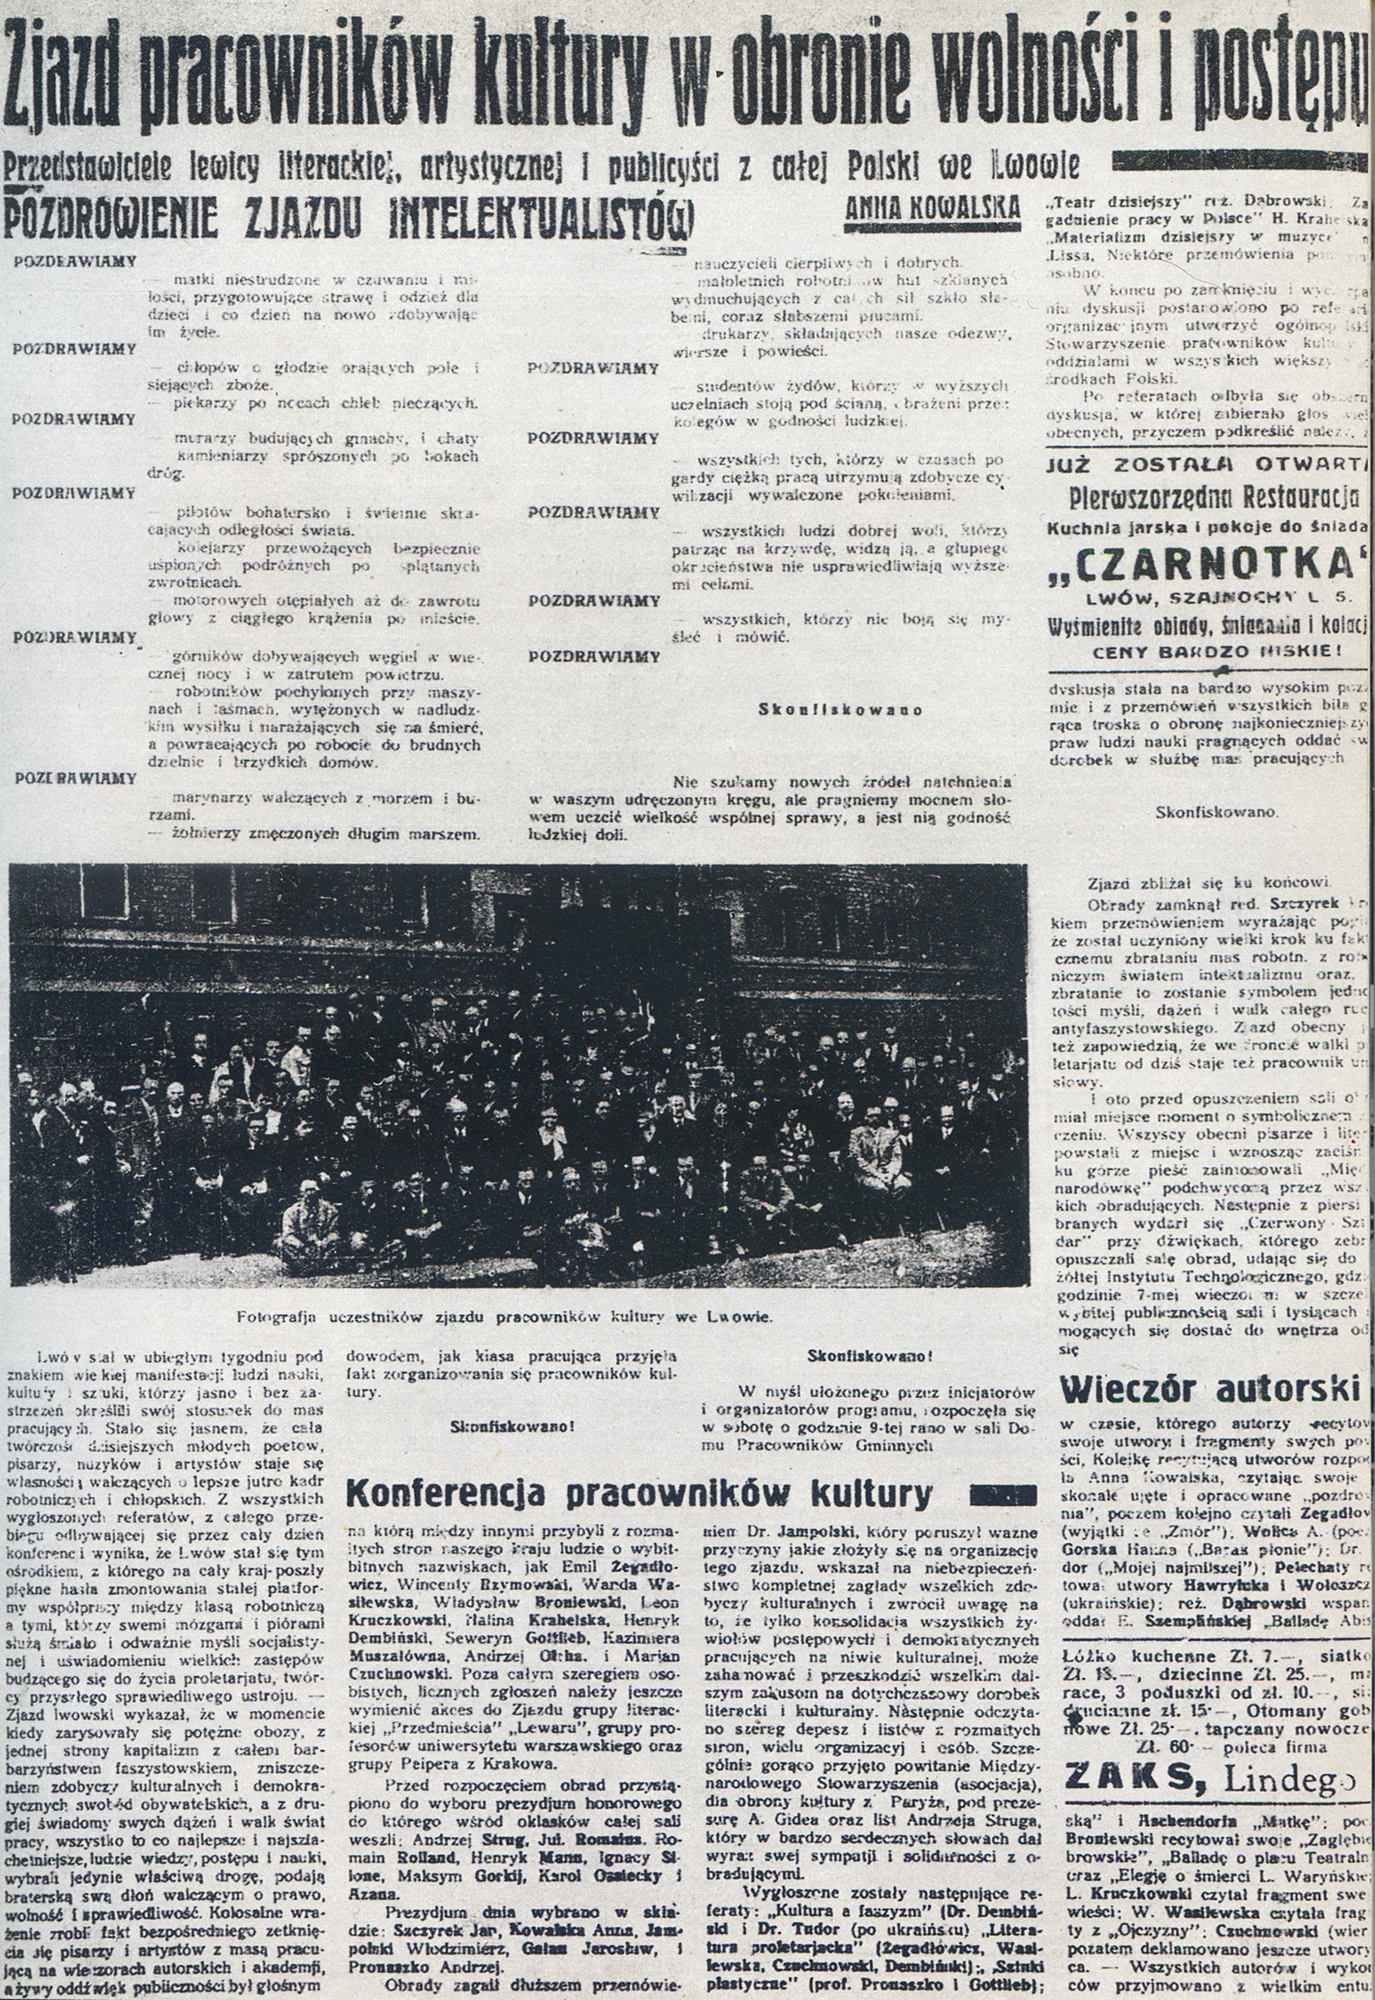 Relacja ze Zjazdu Lwowskiego, „Trybuna Robotnicza”, 24 maja 1936 / Report from the General Assembly in the "Trybuna Robotnicza" newspaper, May 24th 1936